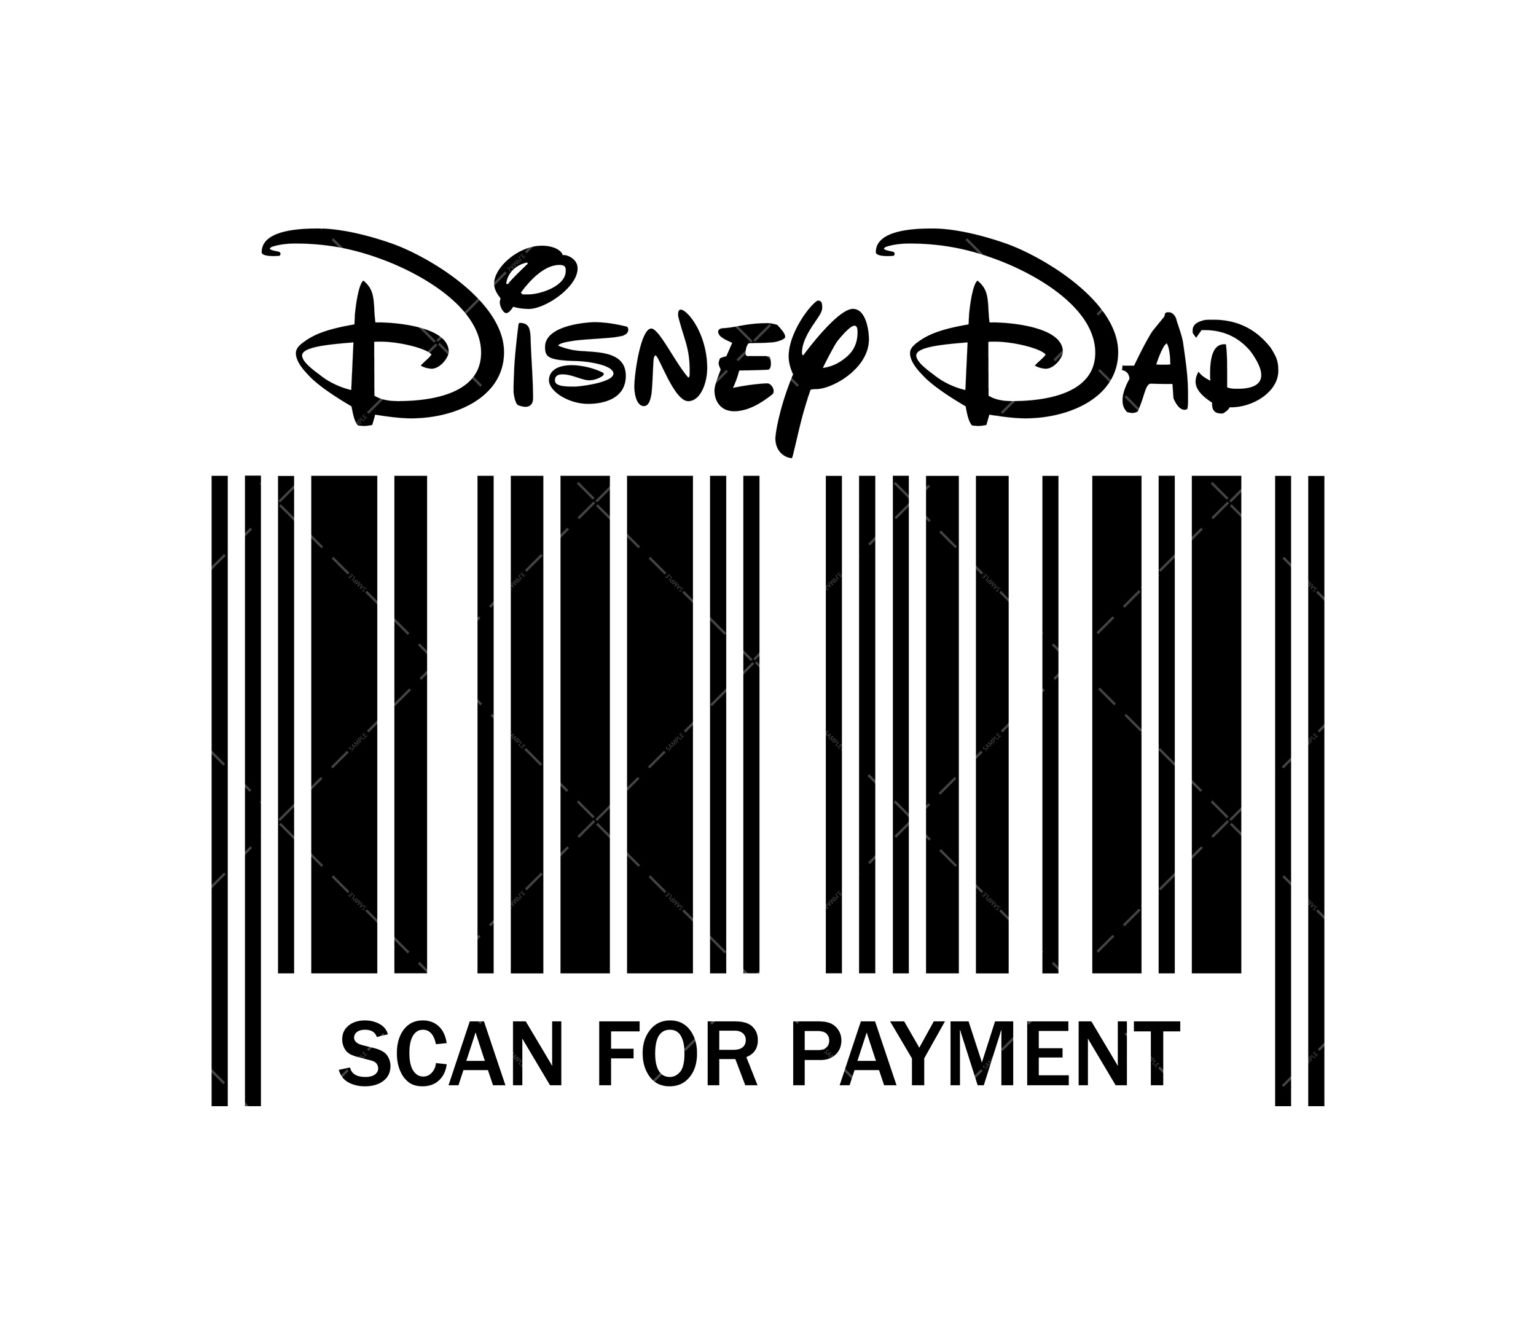 DisneyDad SVG, PDF, PNG, Scan For Payment SVG